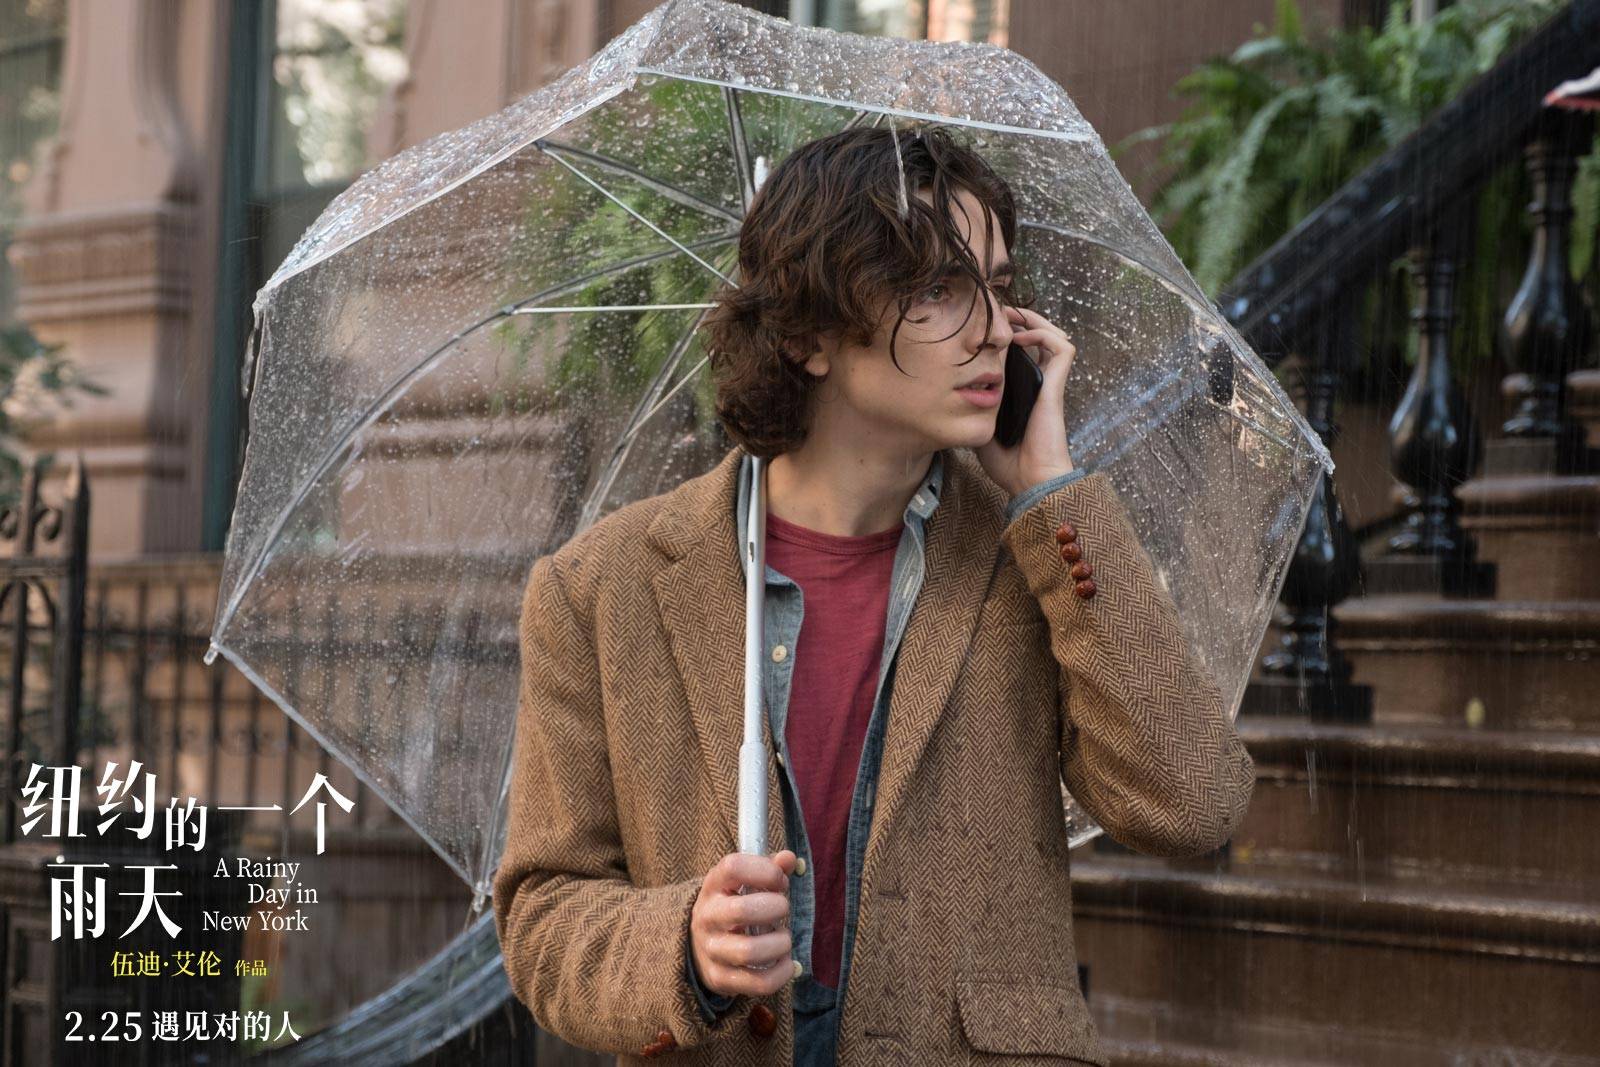 伍迪-艾伦《纽约的一个雨天》定档2月25日内地上映 “甜茶”情迷红白玫瑰